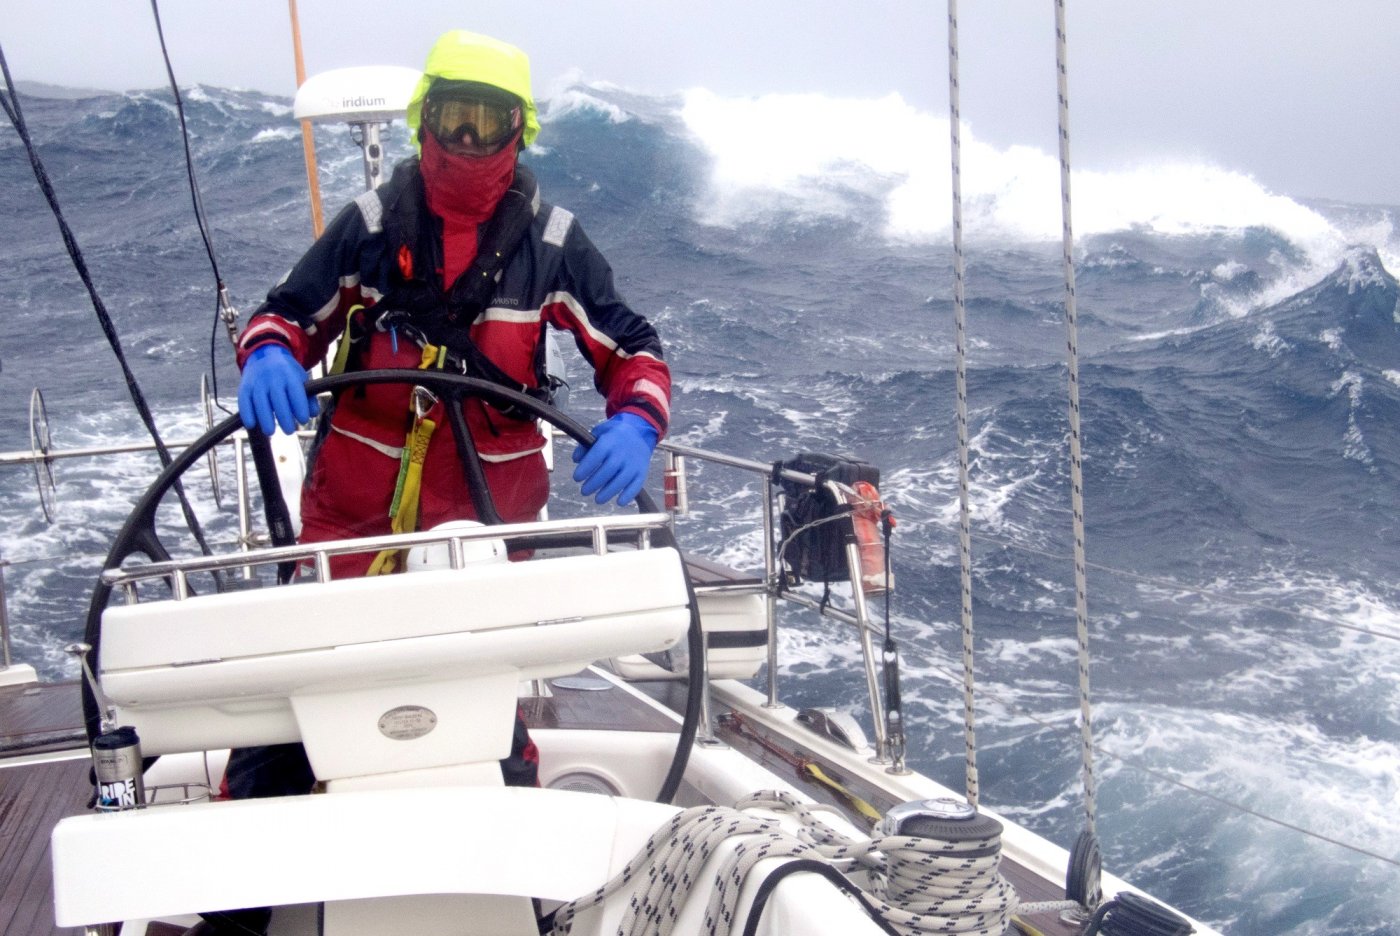   Nagrodę Główną przyznano za pierwsze w historii światowego żeglarstwa okrążenie Antarktydy w rejsie non-stop i tylko pod żaglami. Otrzymał ją kpt. Mariusz Koper, fot. antarcticcircle60s.pl